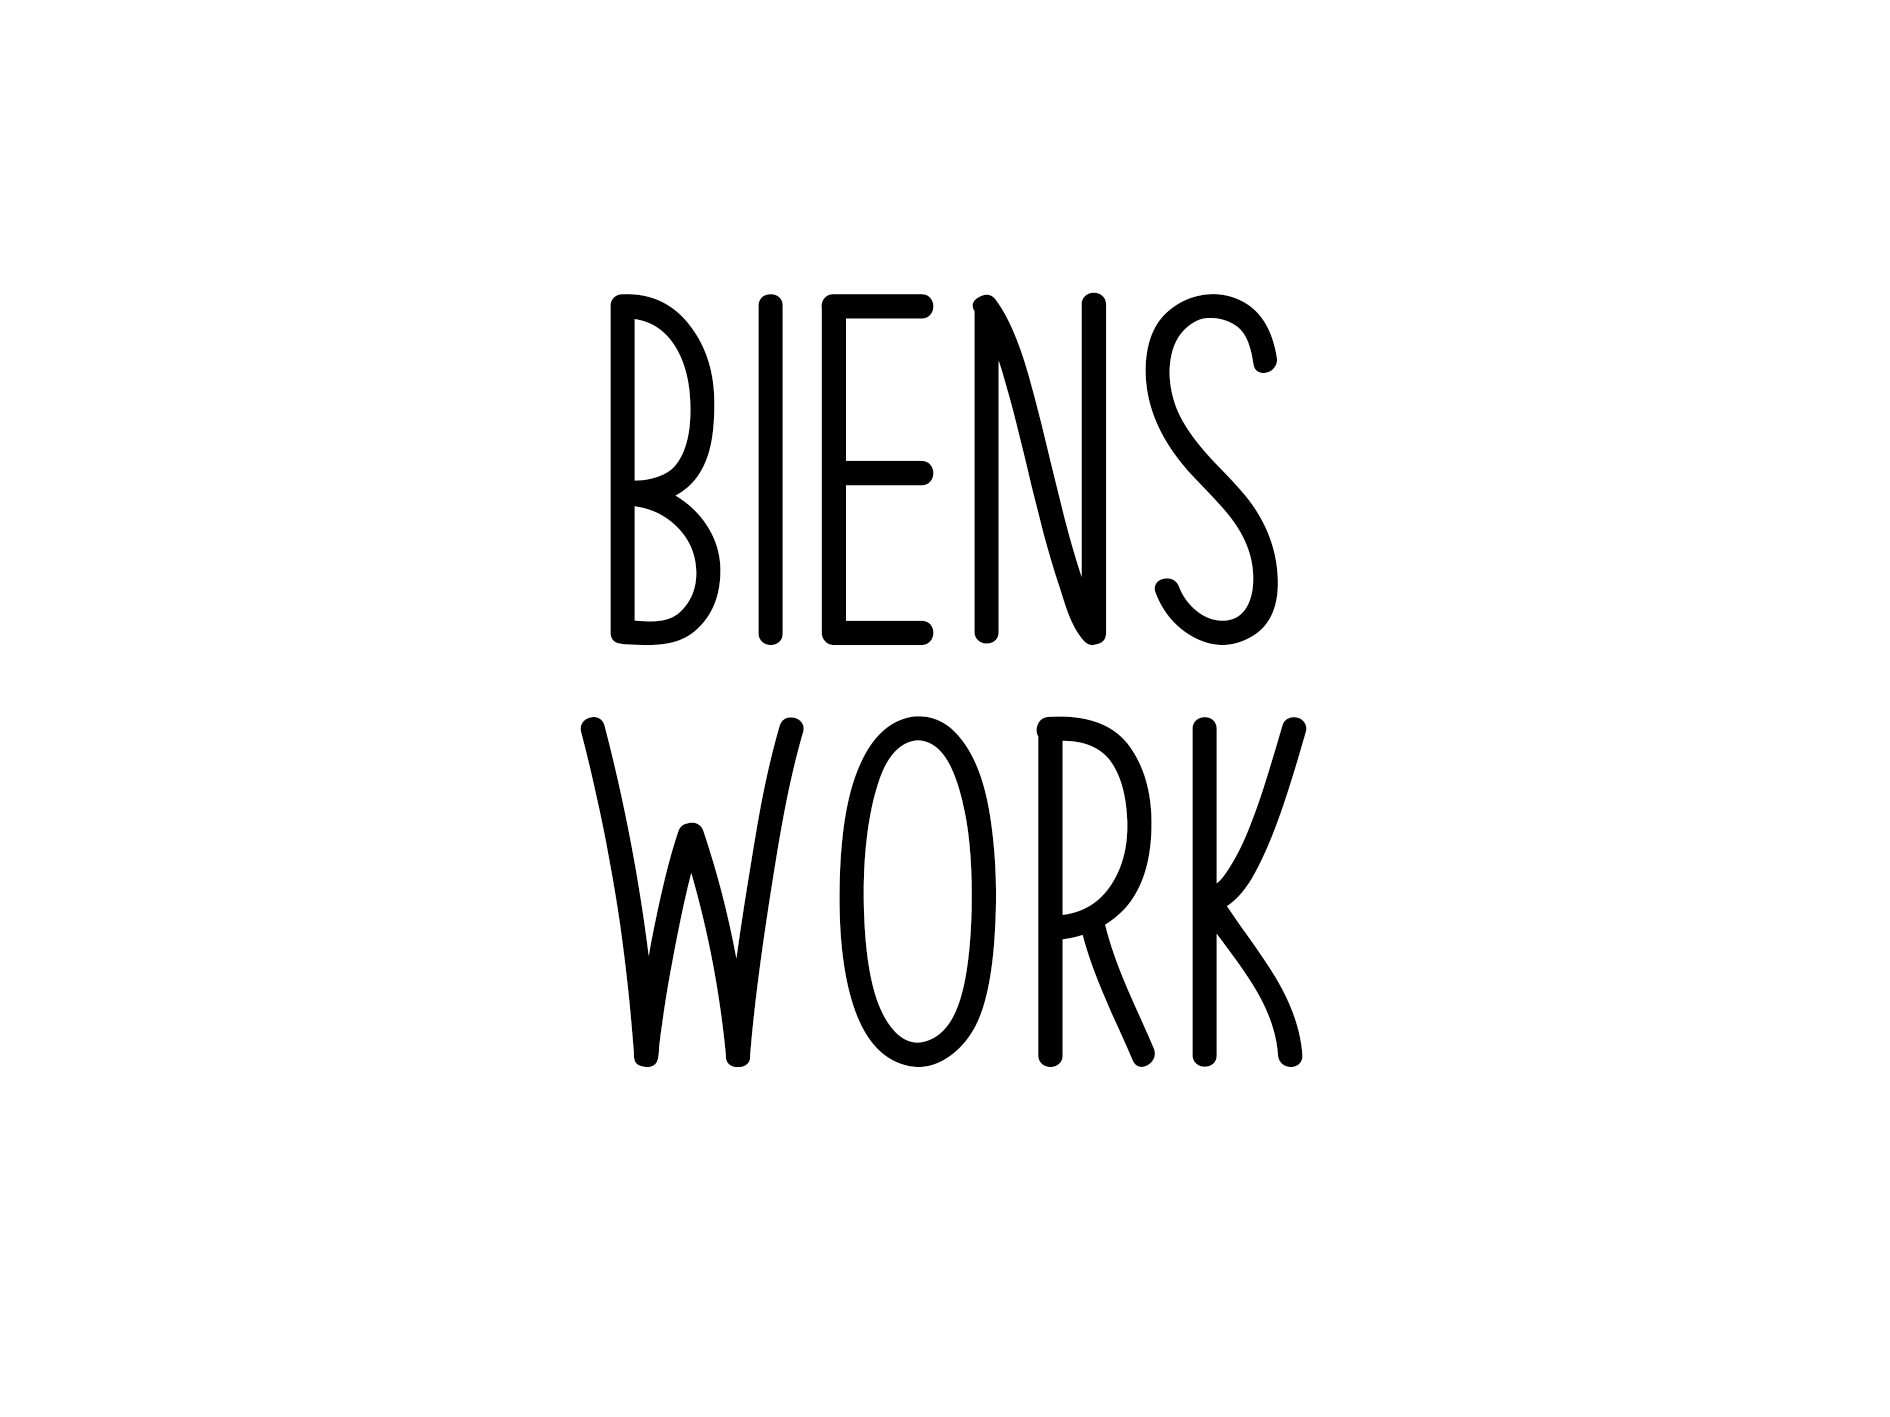 Biens Work